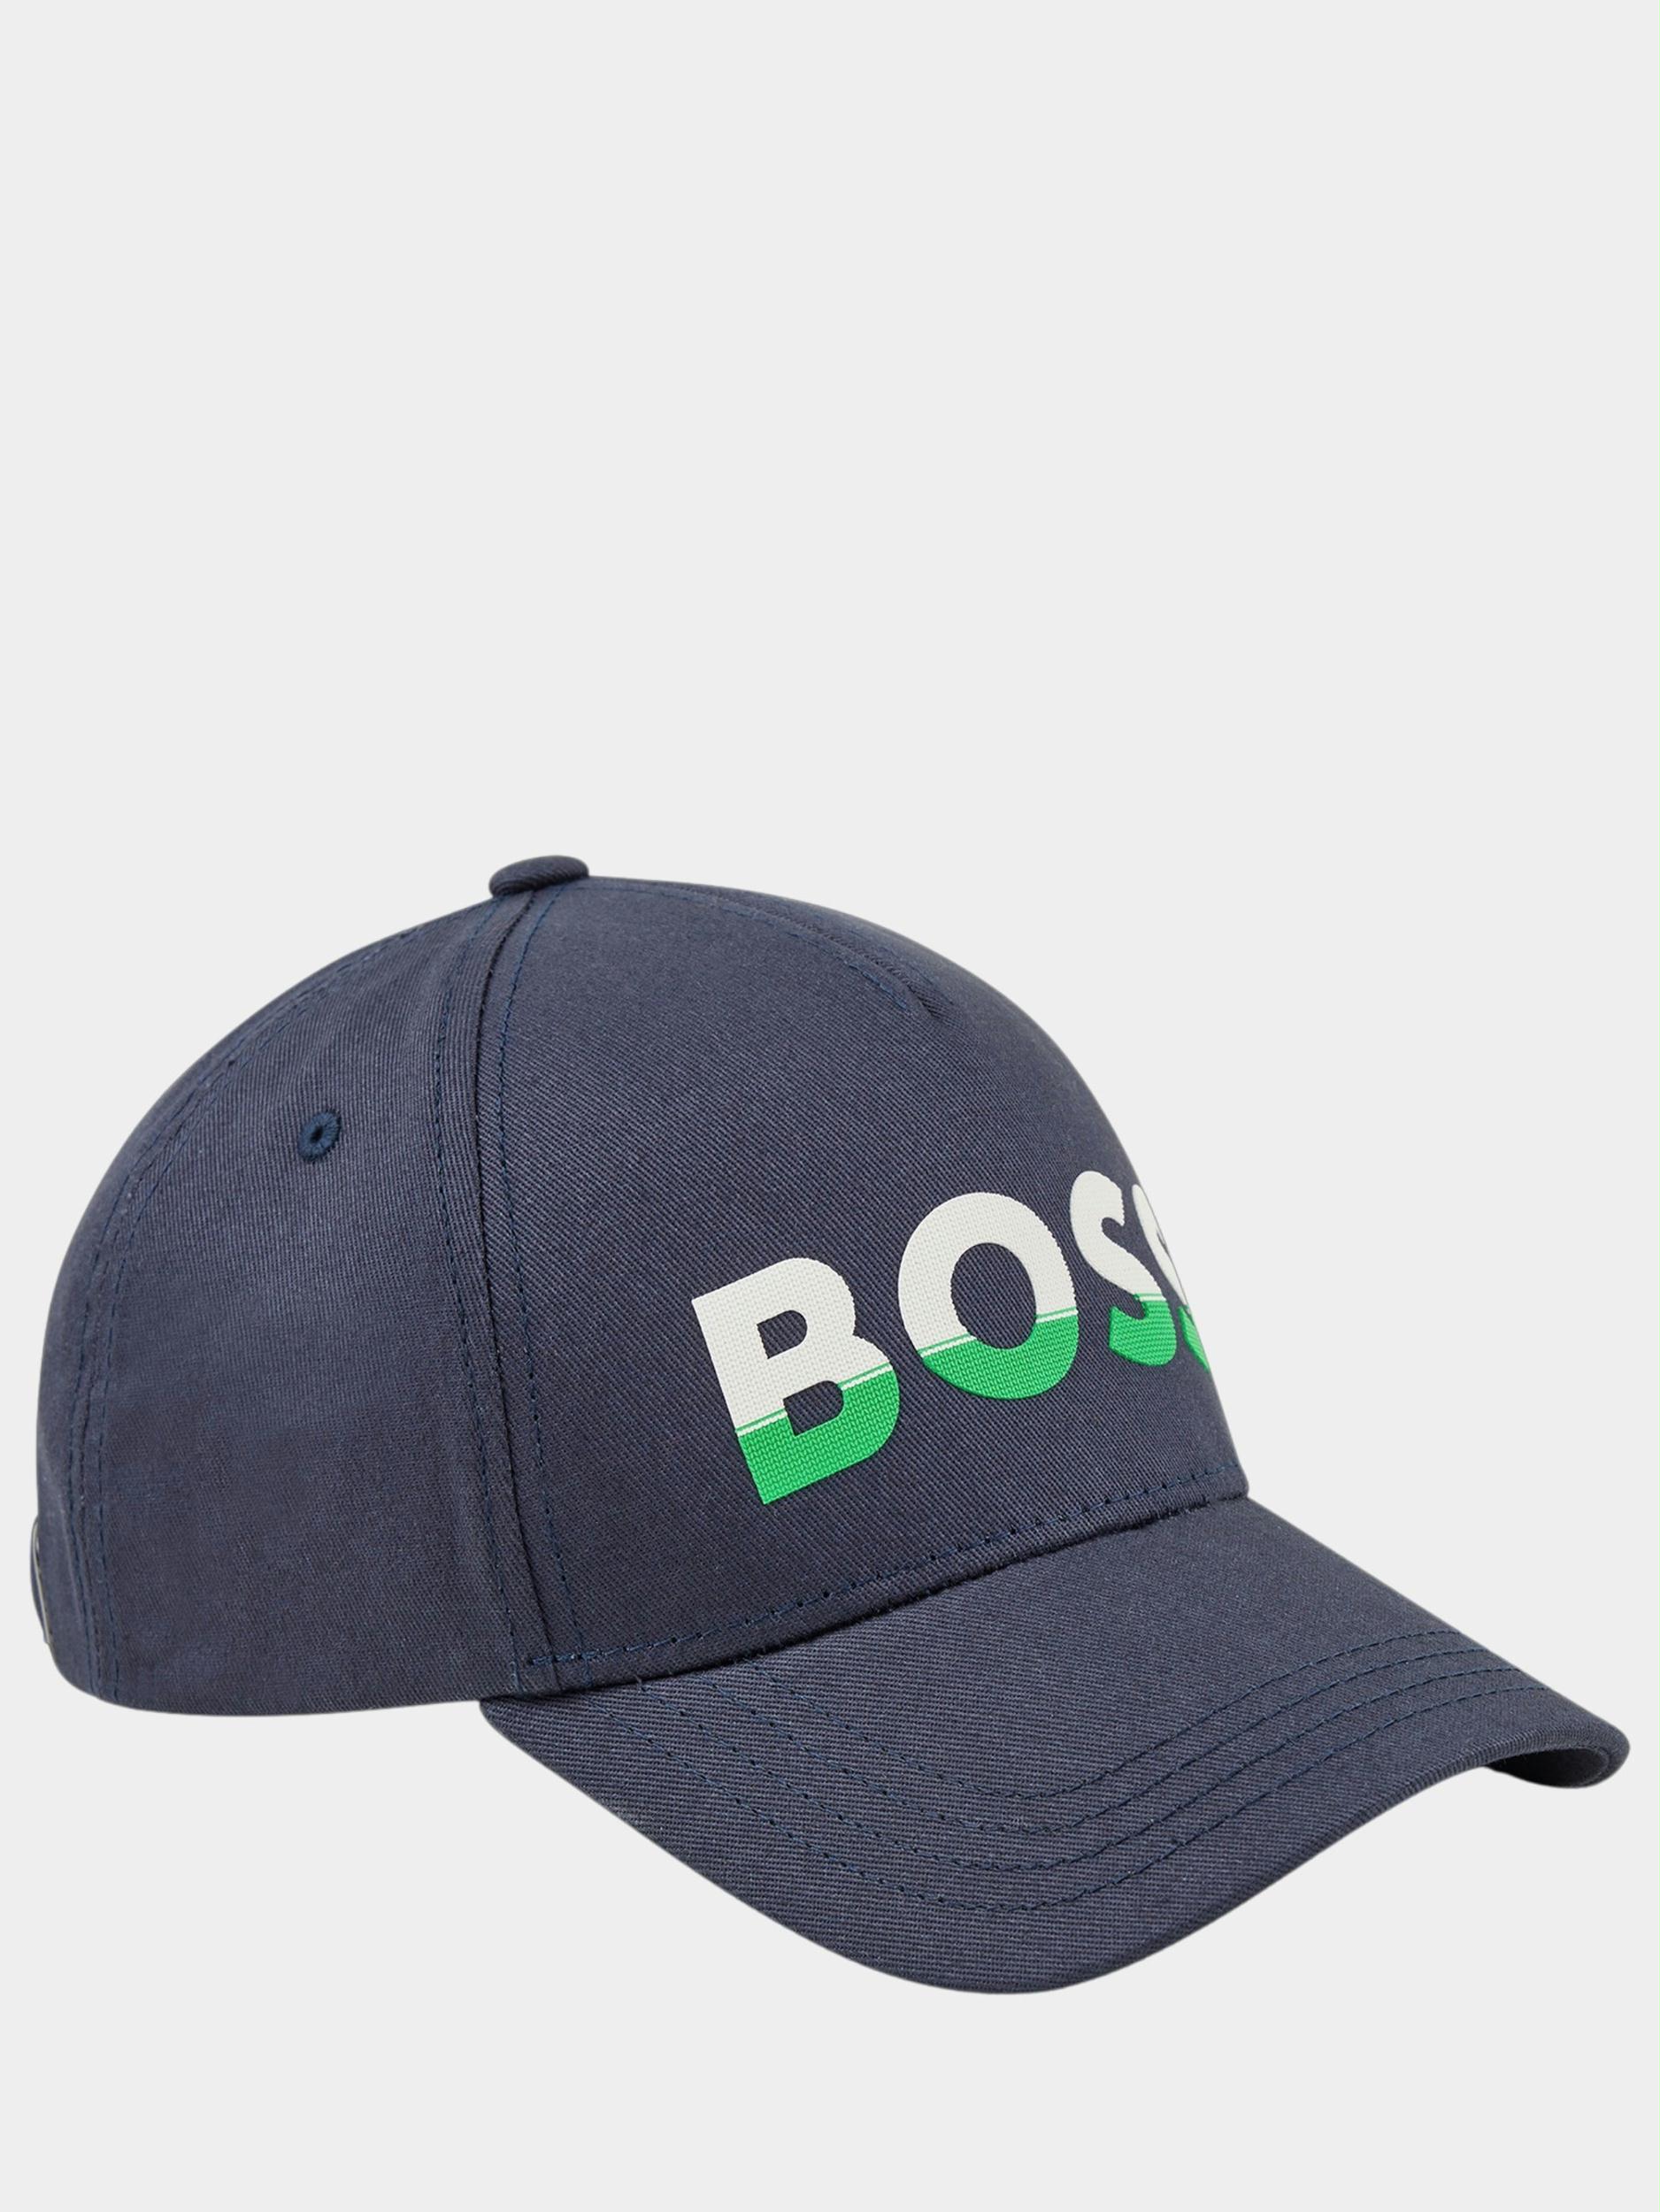 BOSS Green Cap Blauw Cap-Bold-Block 10234074 01 50476183/402